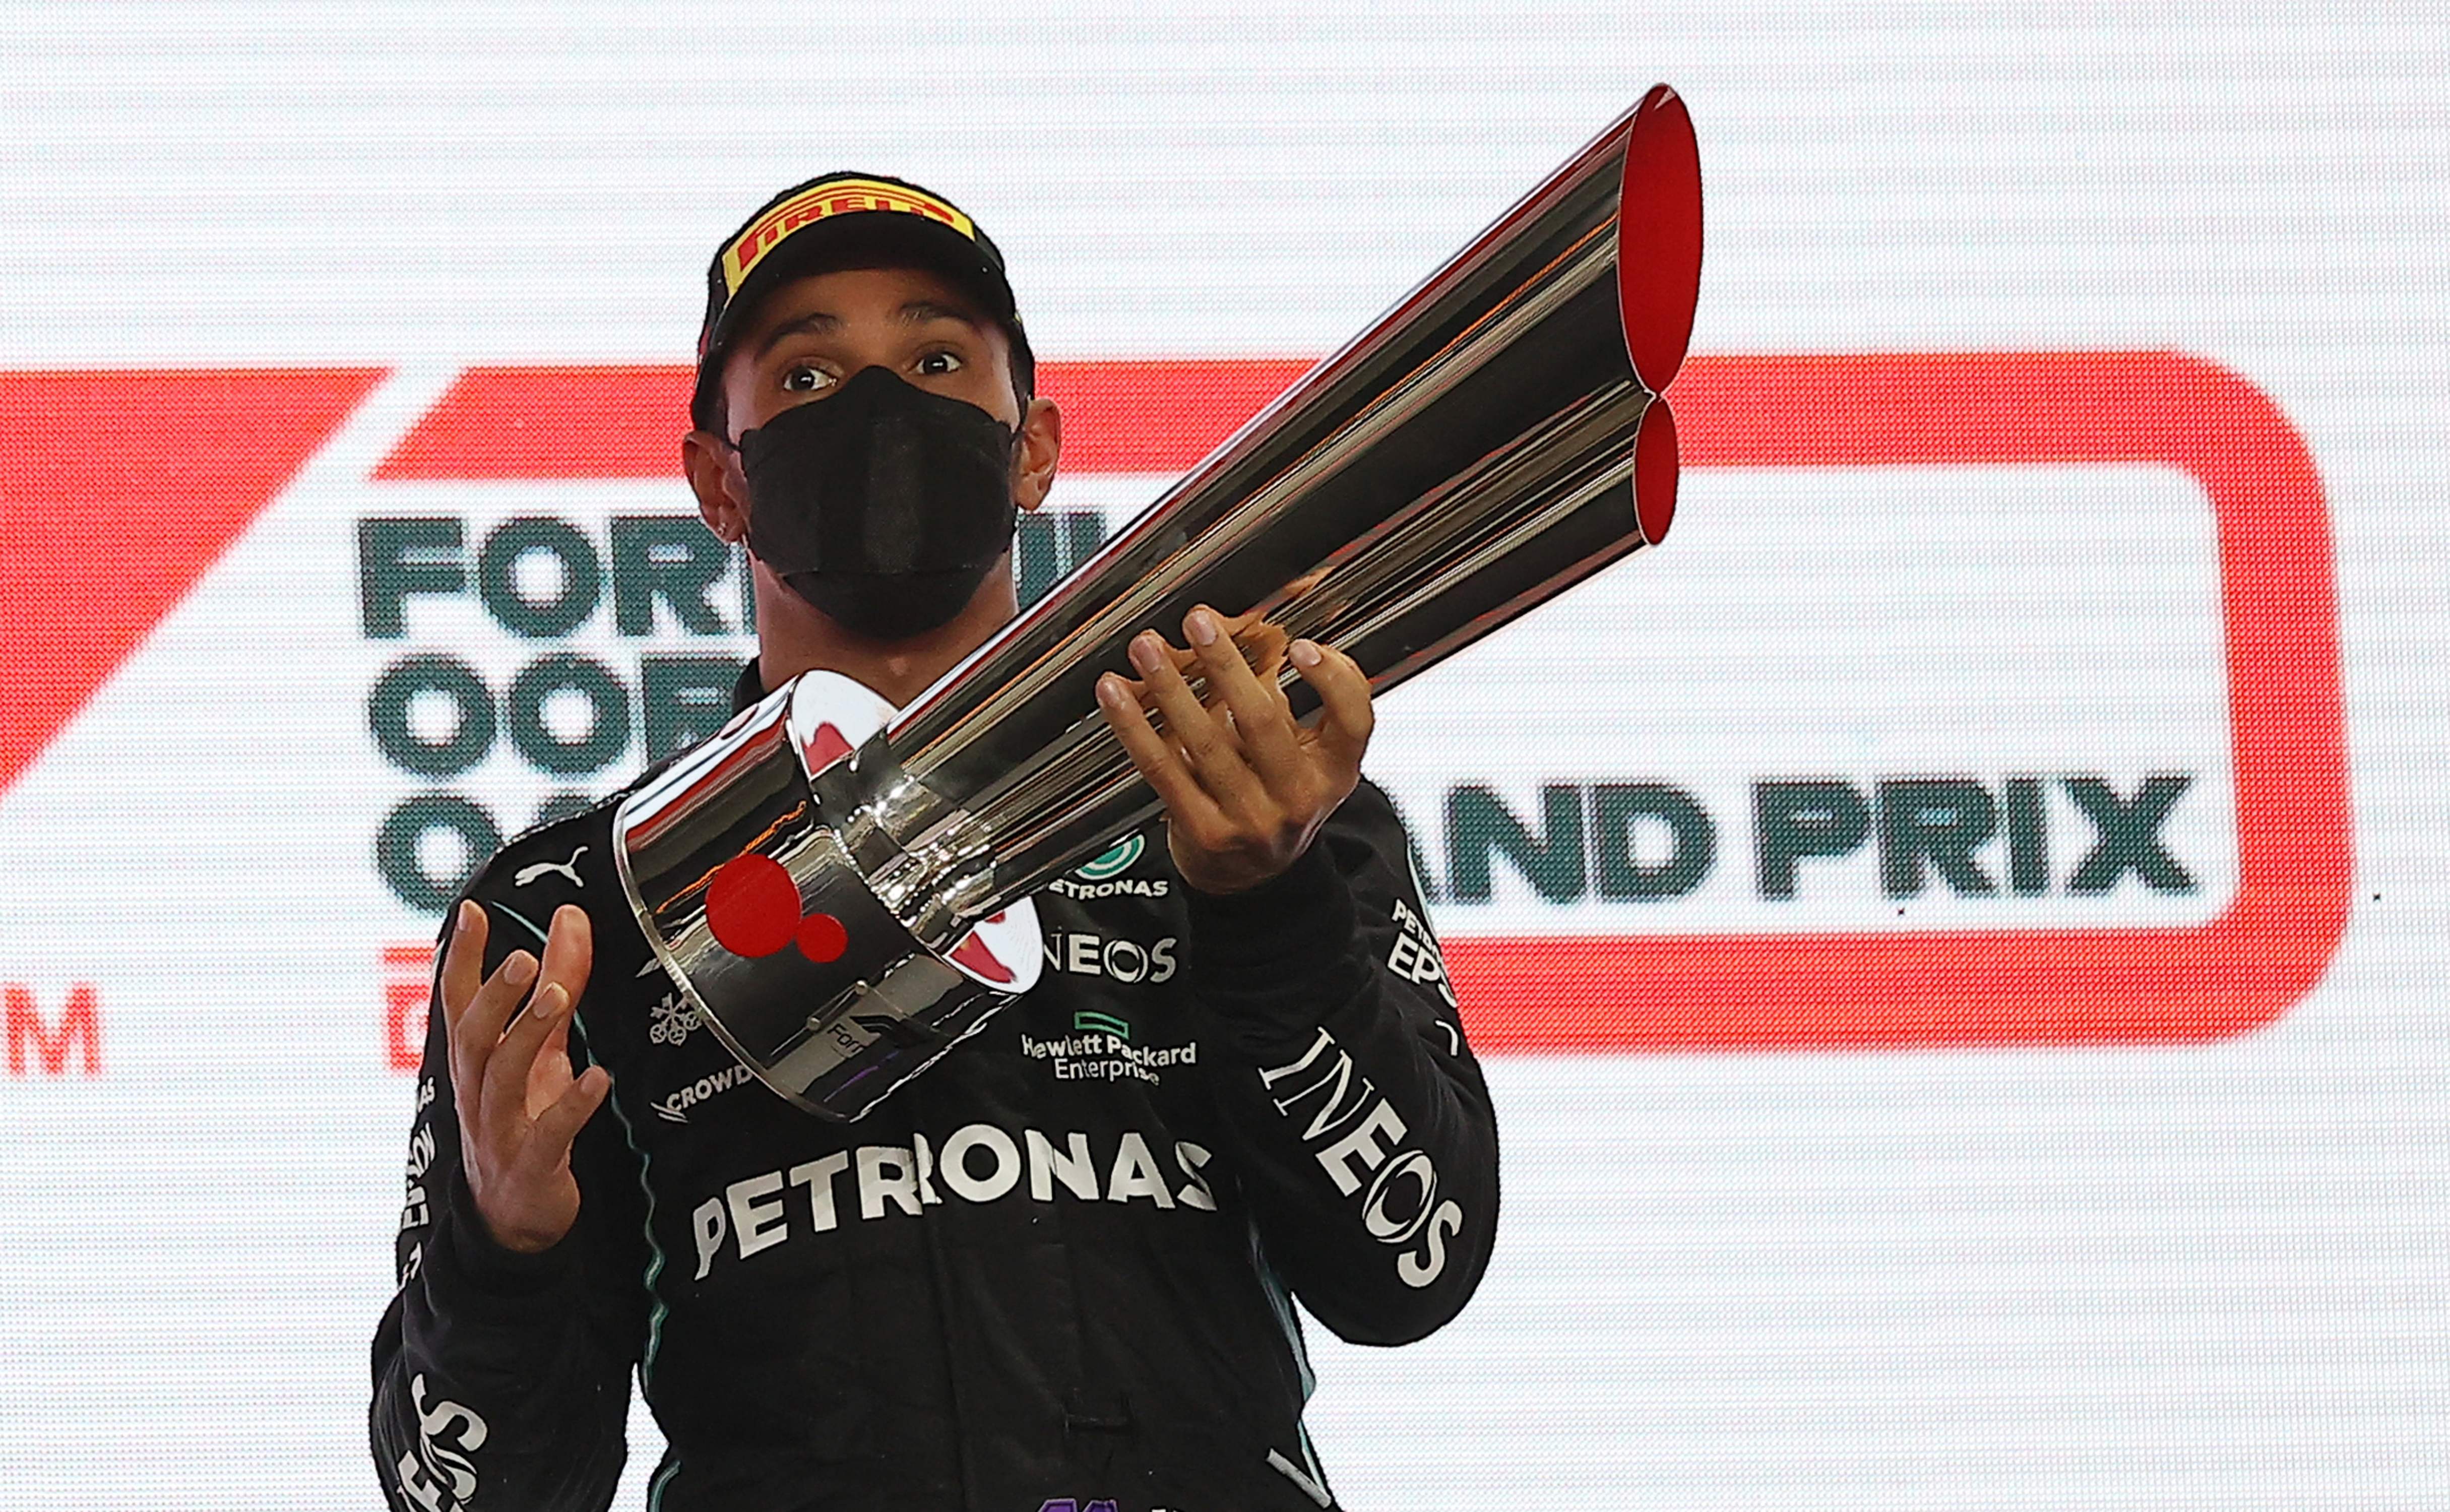 El piloto de Mercedes Lewis Hamilton celebra en el podio del Qatari Formula One Grand Prix en el Losail International Circuit. (Foto Prensa Libre: AFP)